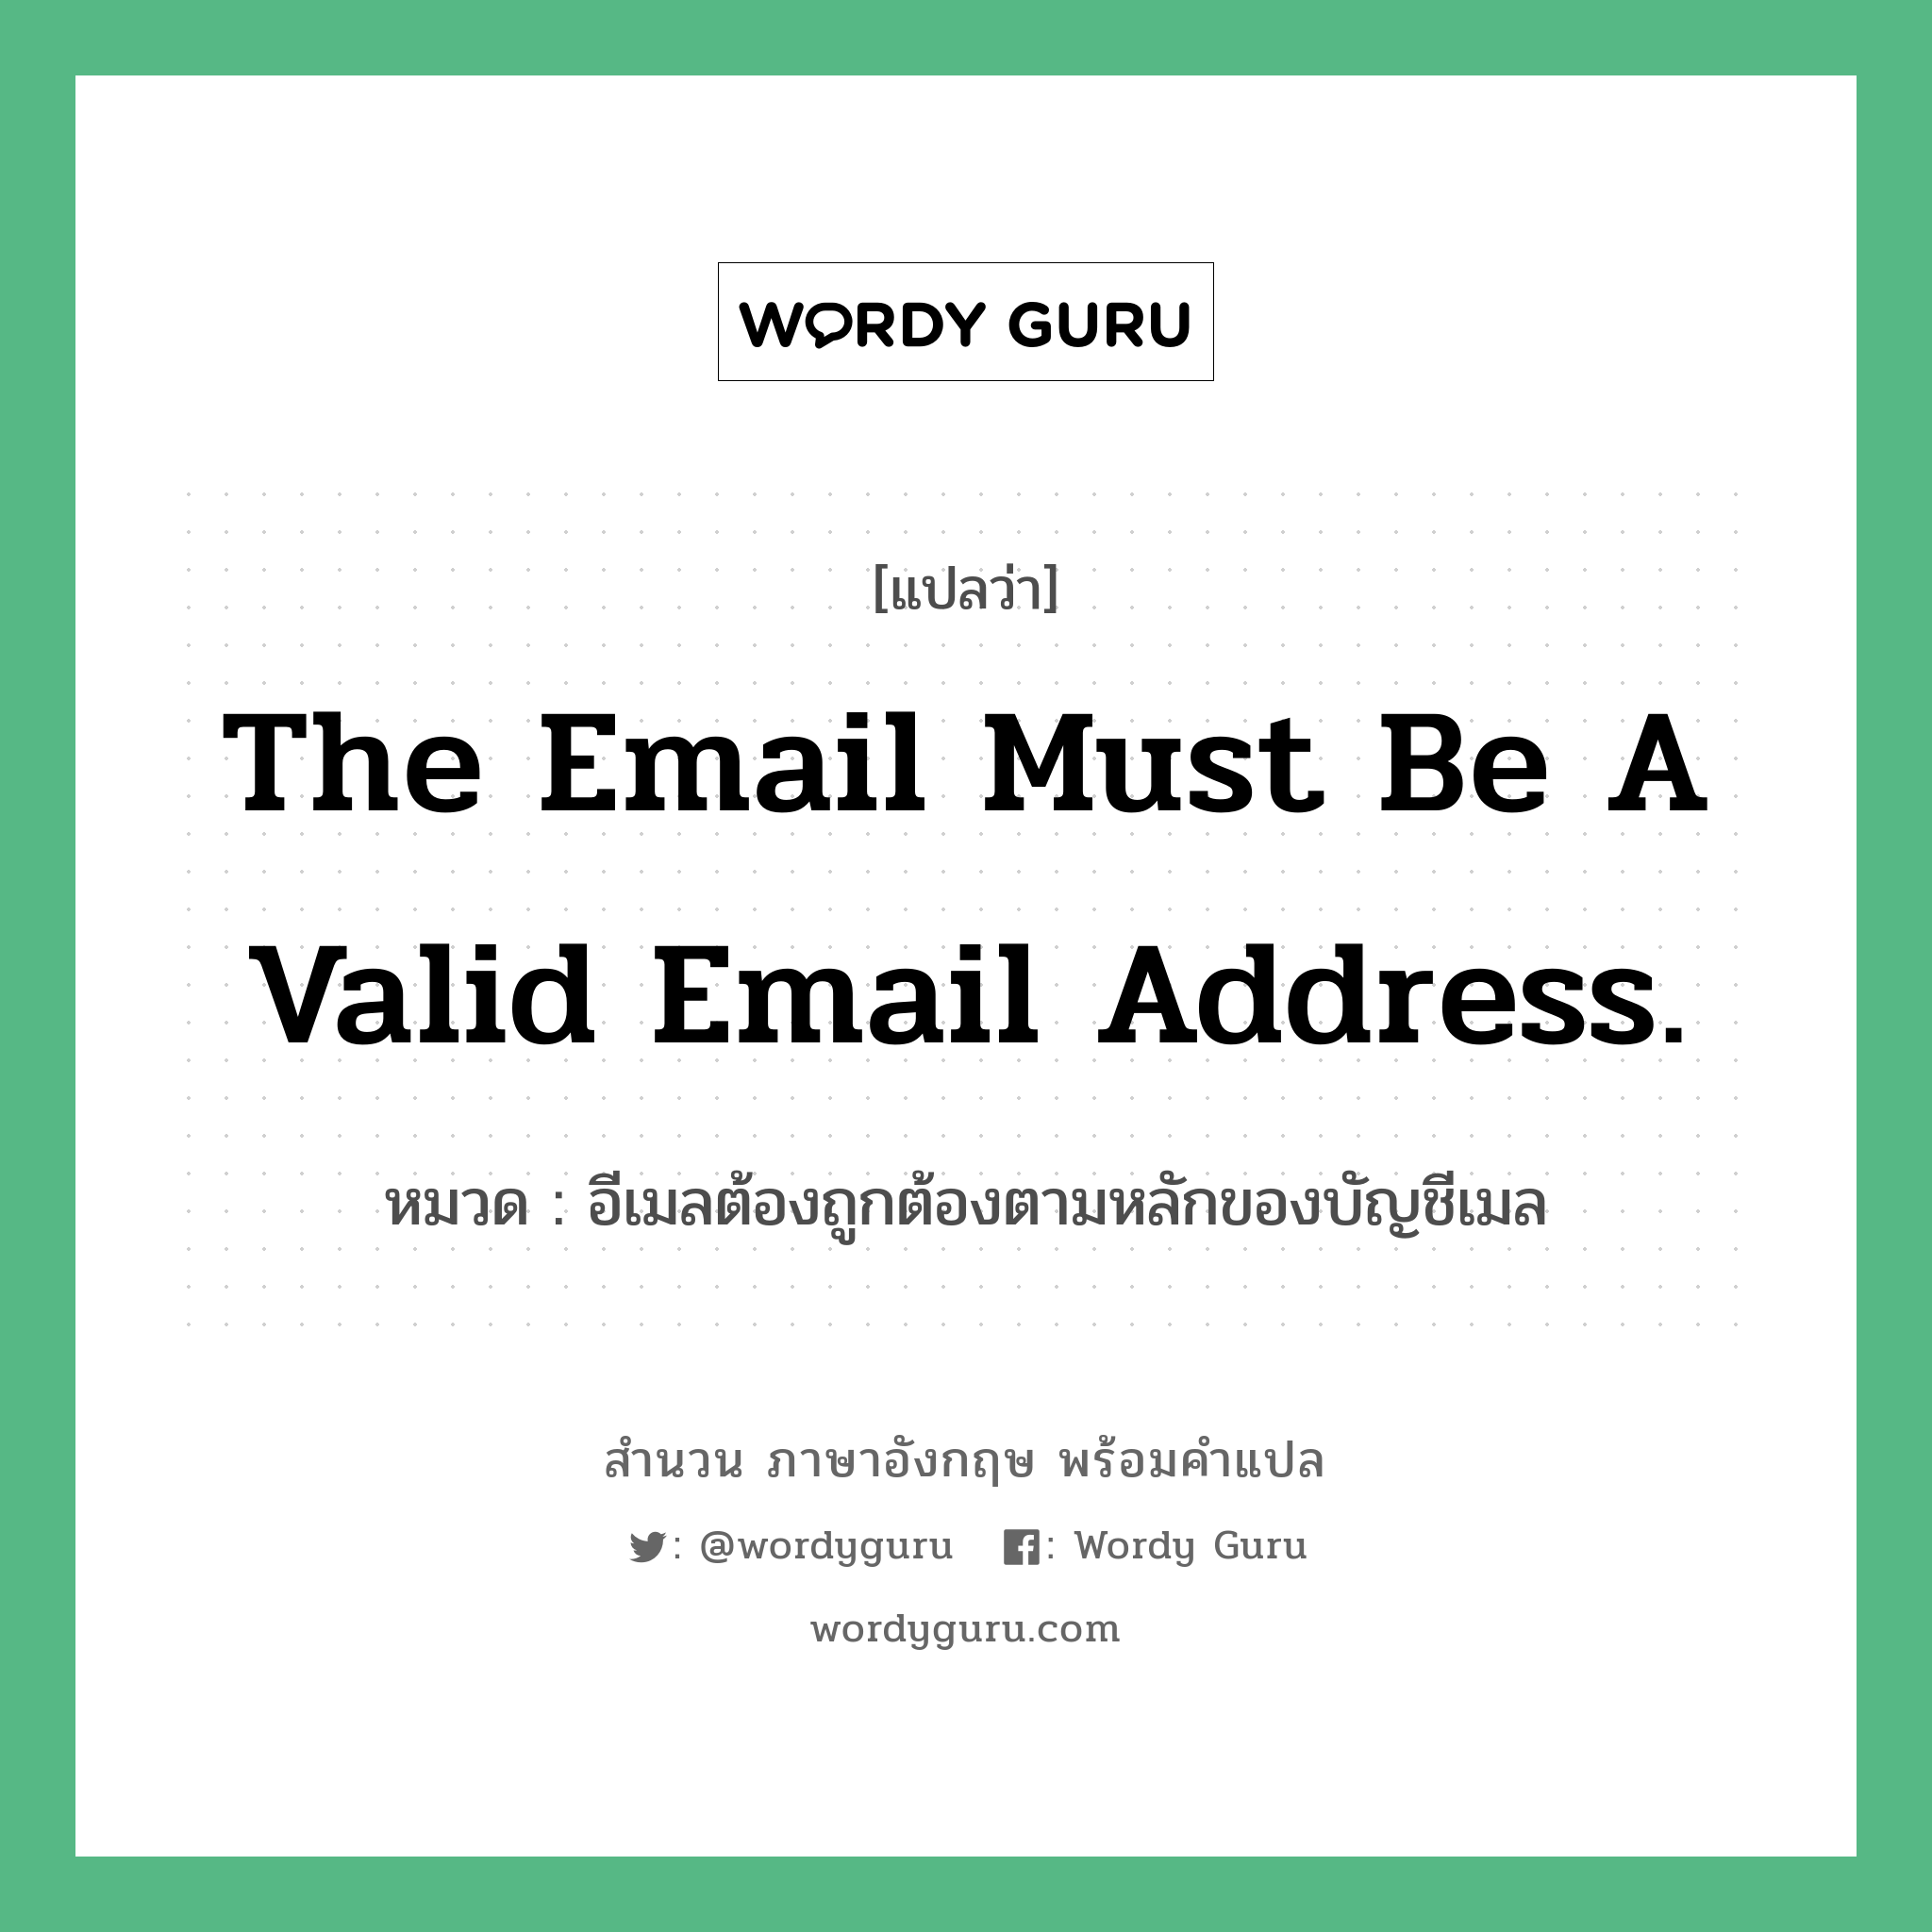 อีเมลต้องถูกต้องตามหลักของบัญชีเมล ภาษาอังกฤษ?, สำนวนภาษาอังกฤษ อีเมลต้องถูกต้องตามหลักของบัญชีเมล แปลว่า อีเมลต้องถูกต้องตามหลักของบัญชีเมล หมวด The email must be a valid email address.